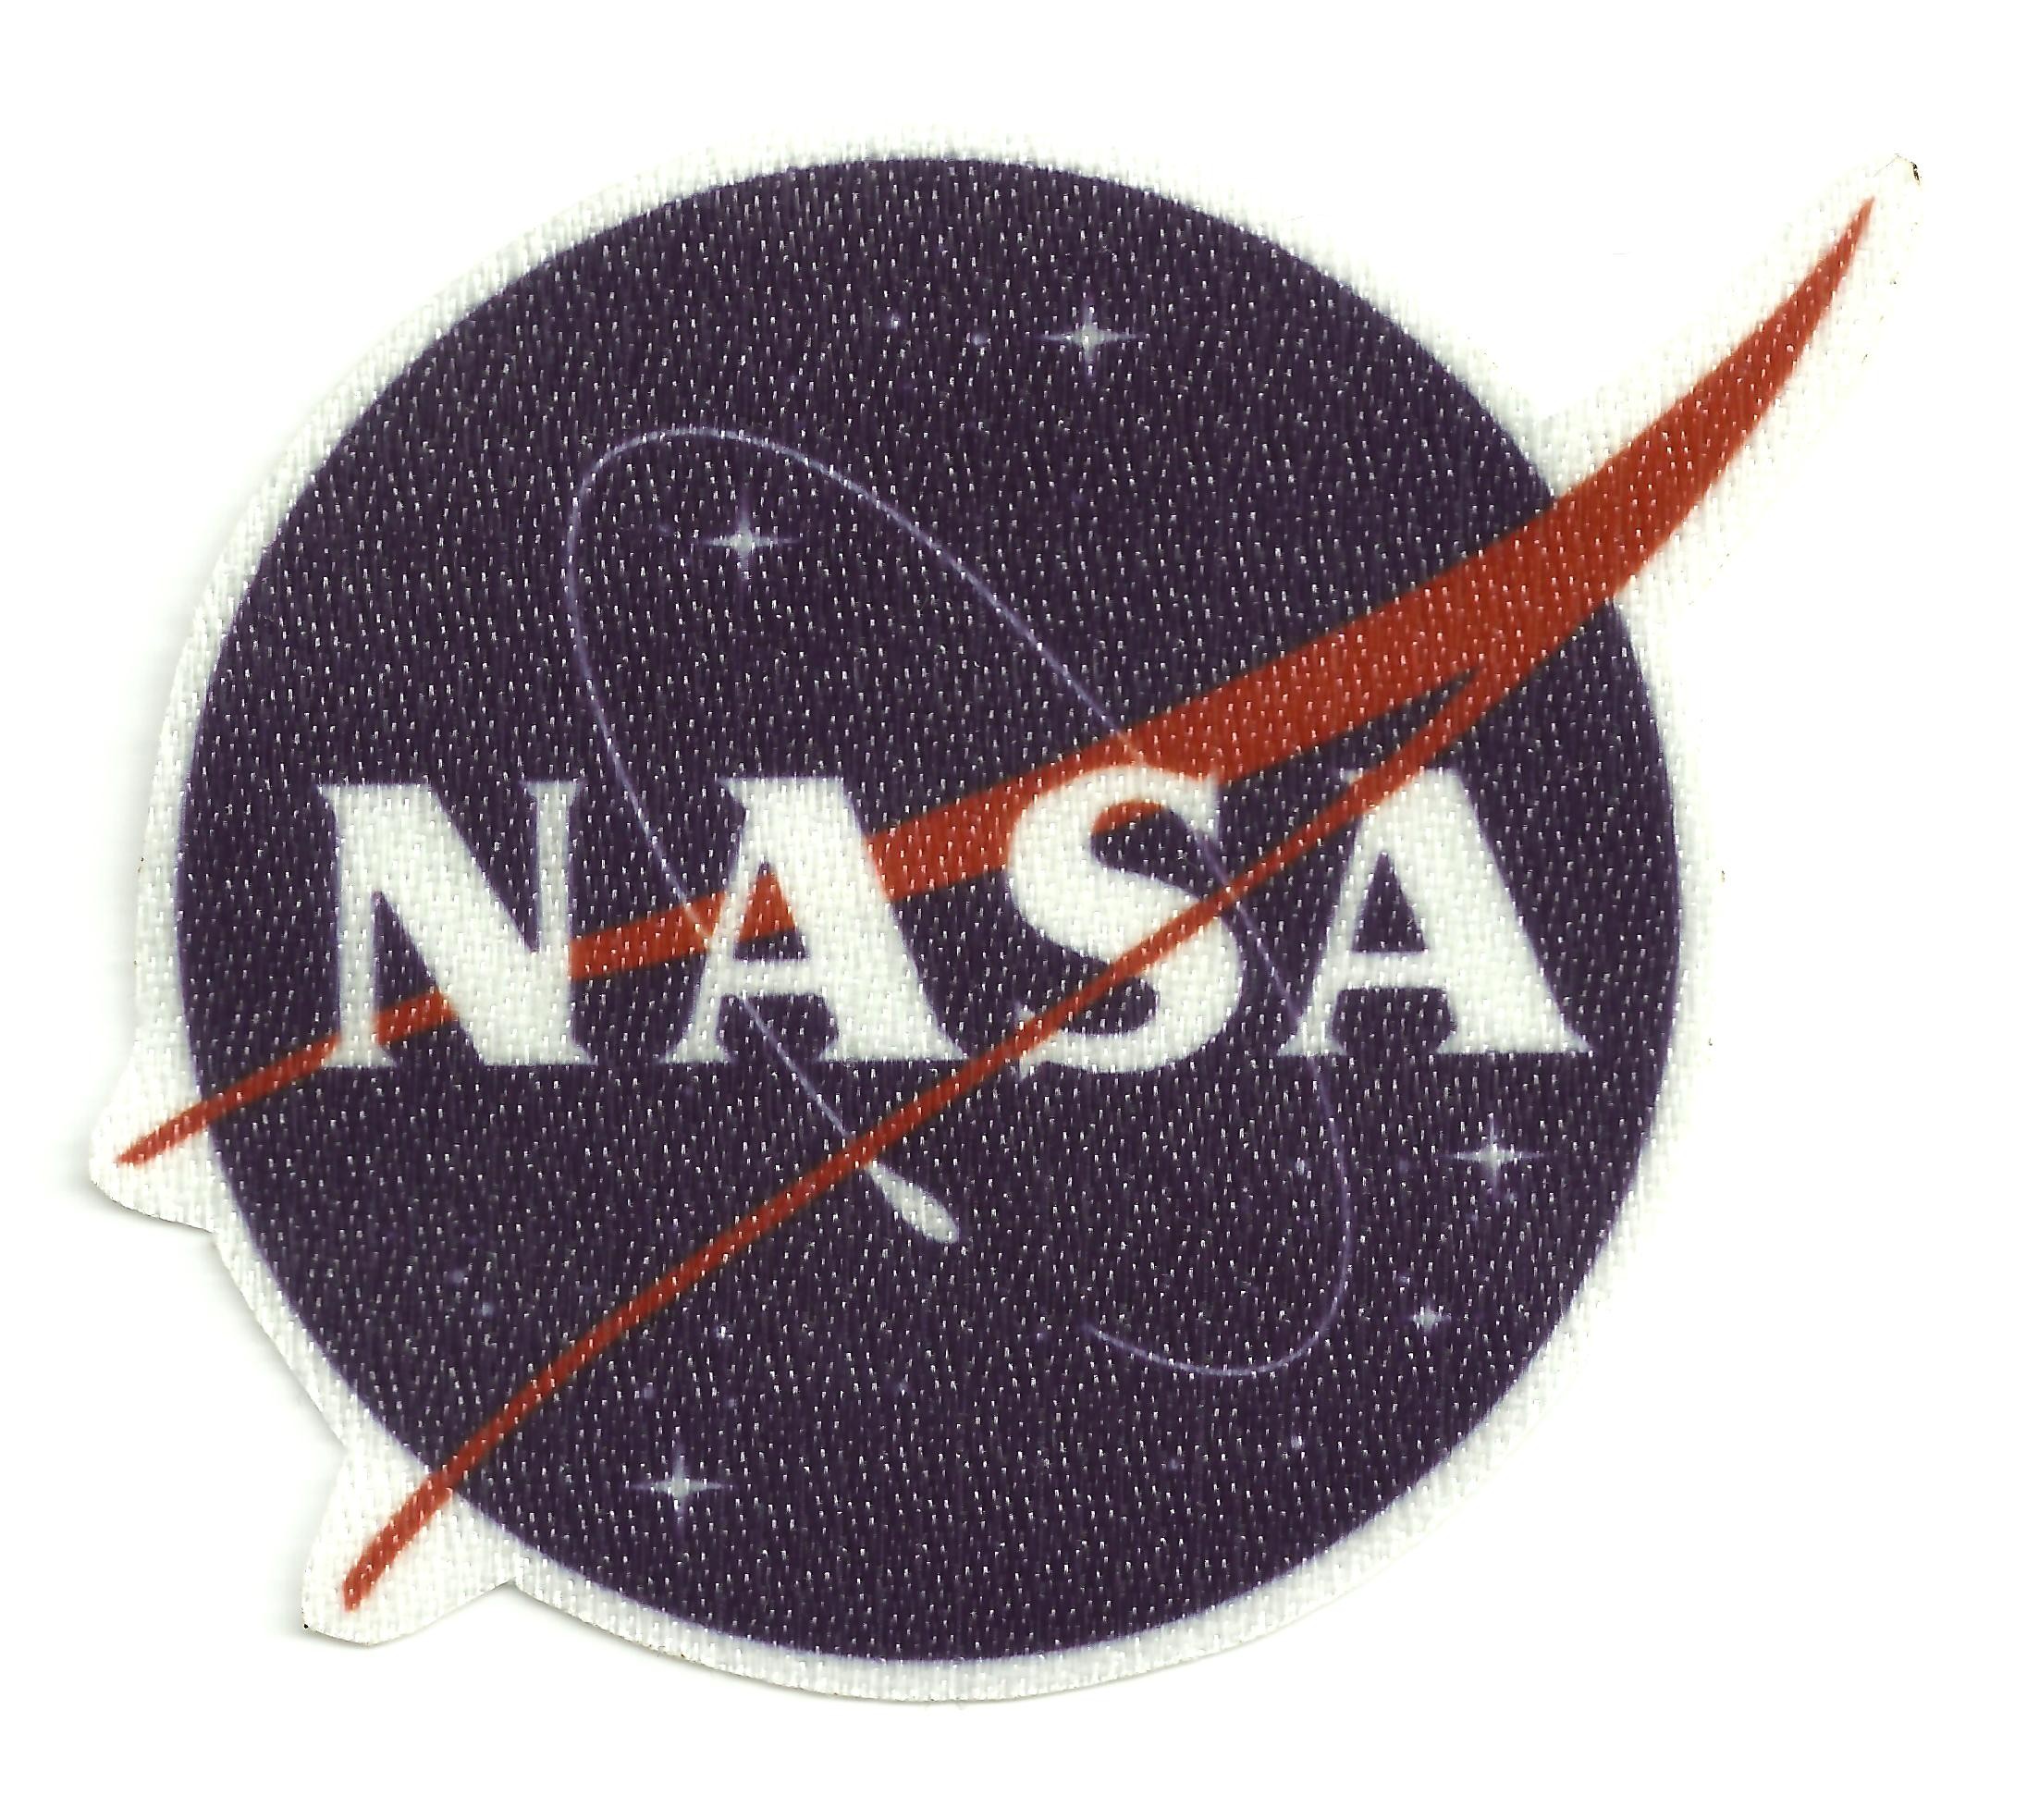 Parche NASA negro y blanco